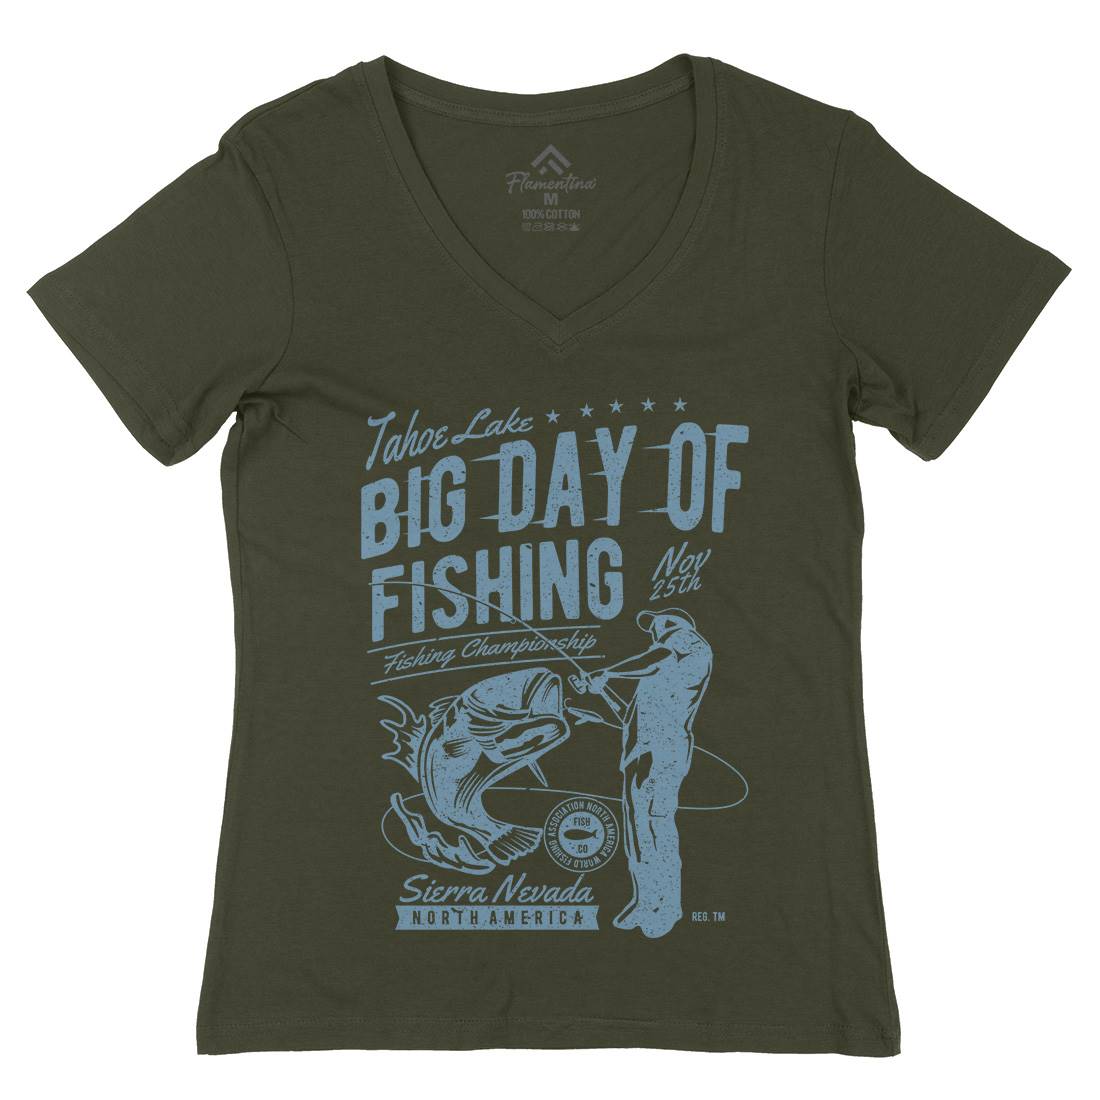 Big Day Of Womens Organic V-Neck T-Shirt Fishing A618